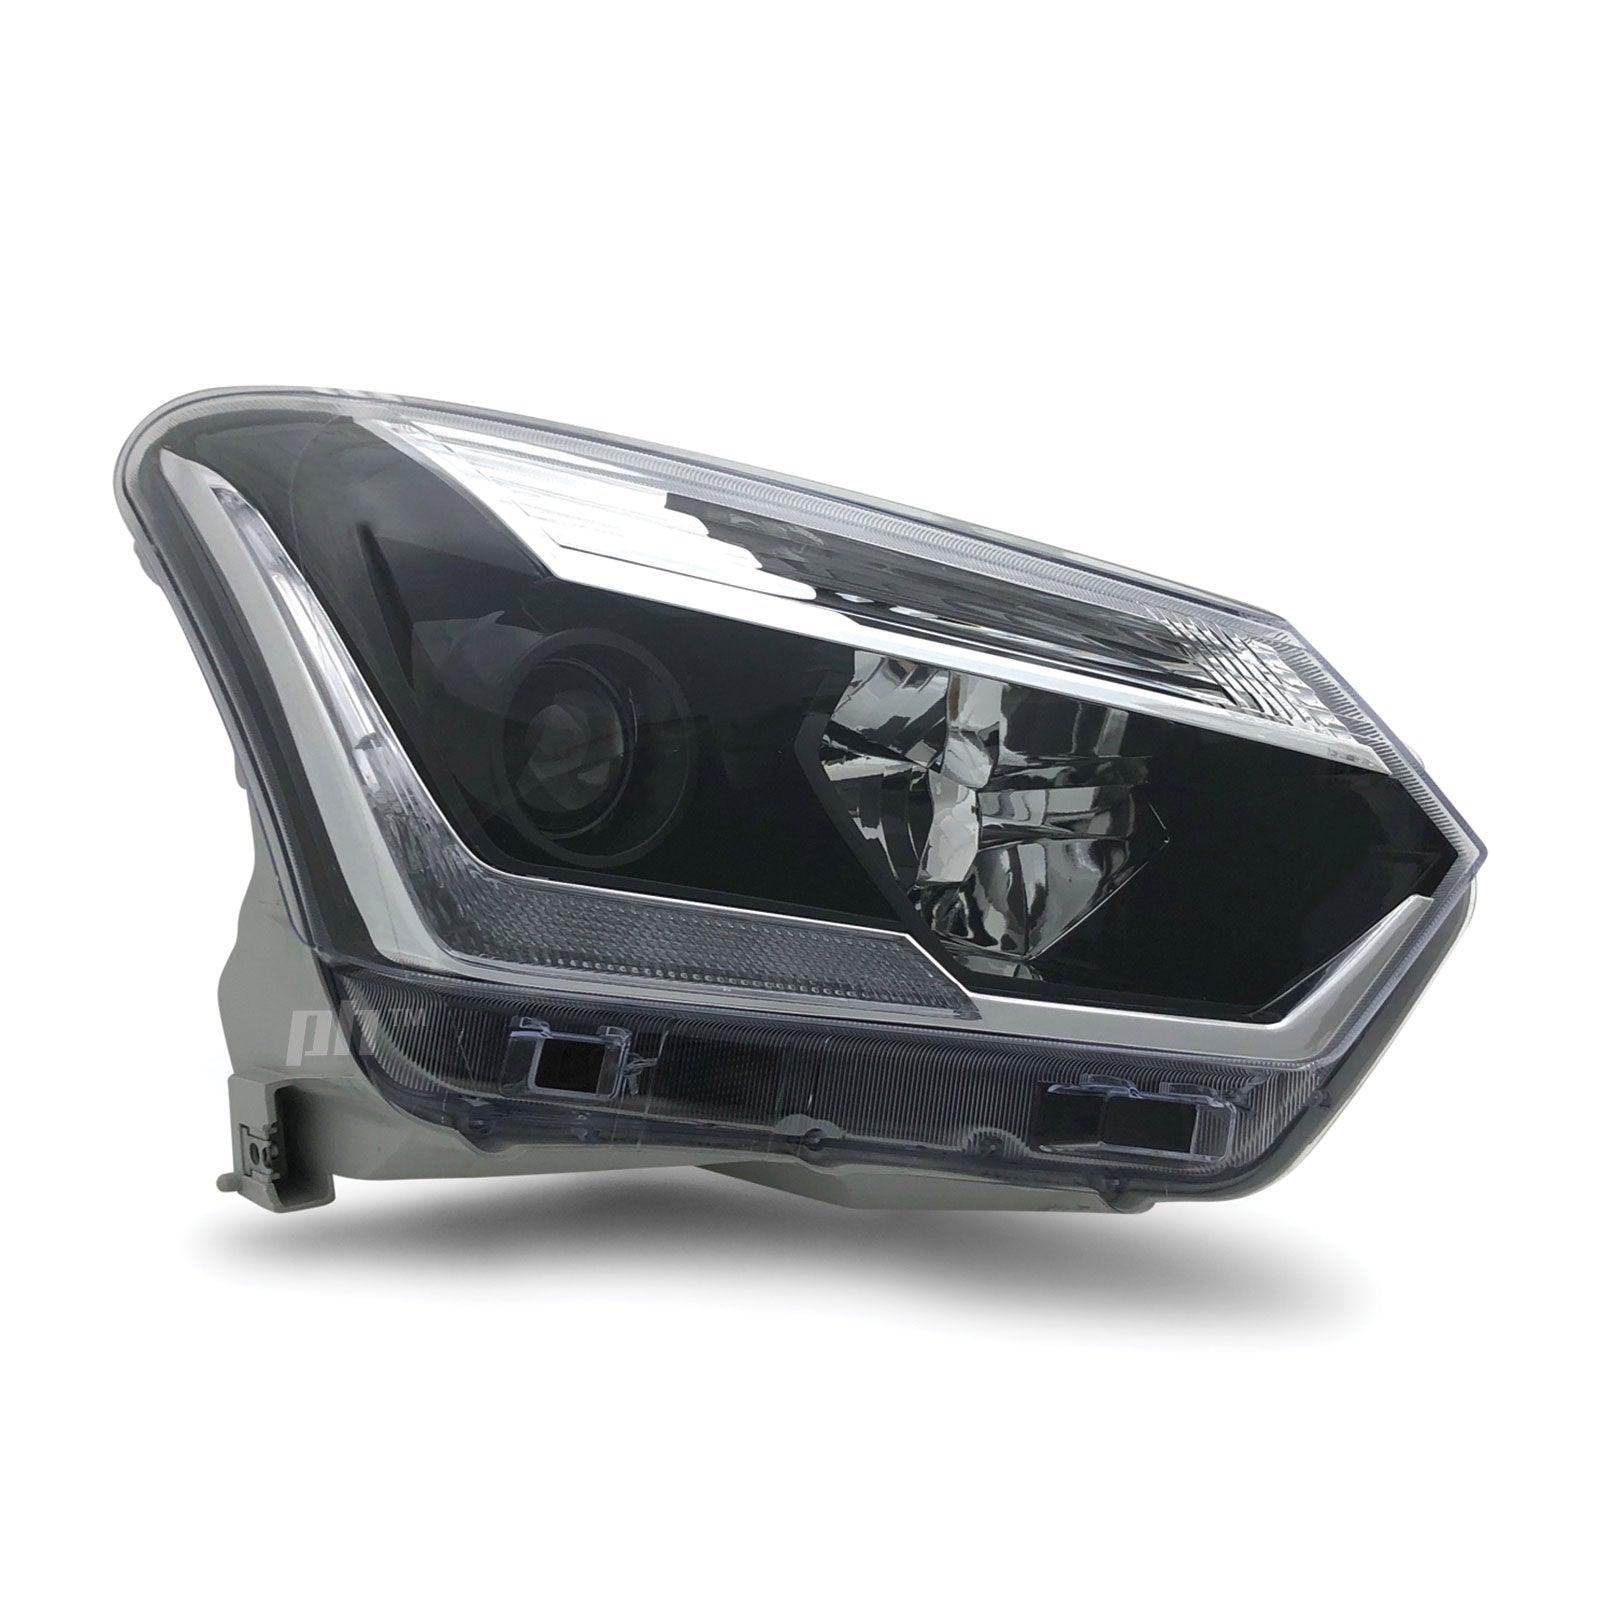 Headlight Black Projector LED DRL RIGHT Fits Isuzu DMAX 2017 - 2020 - 4X4OC™